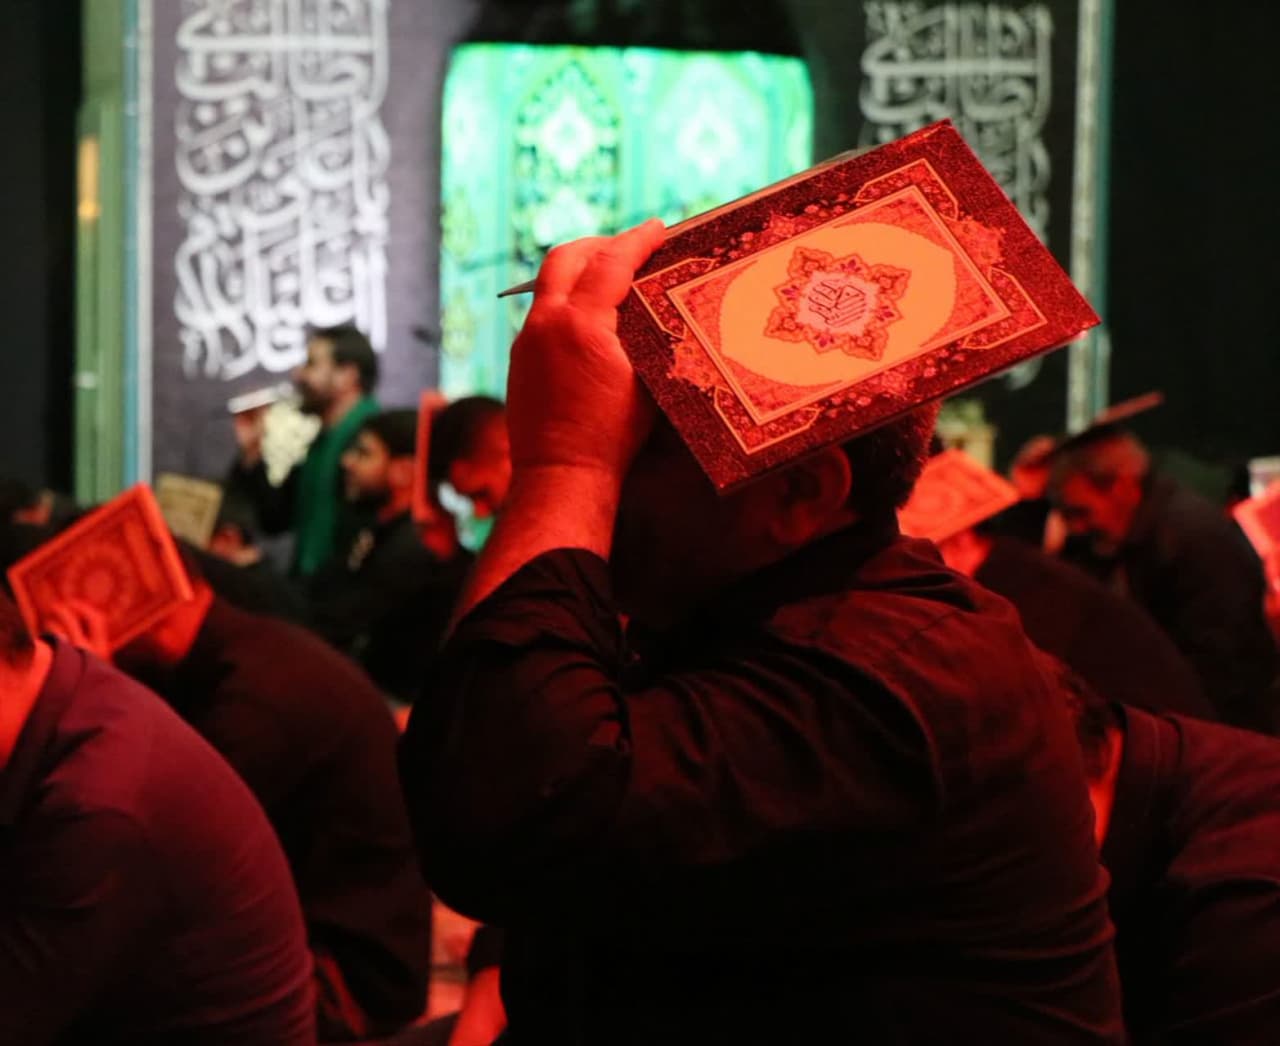 مراسم شب قدر به  همت  نوجوانان کانون "نسيم رحمت" در مسجد امام حسن عسکري (ع)بجنورد